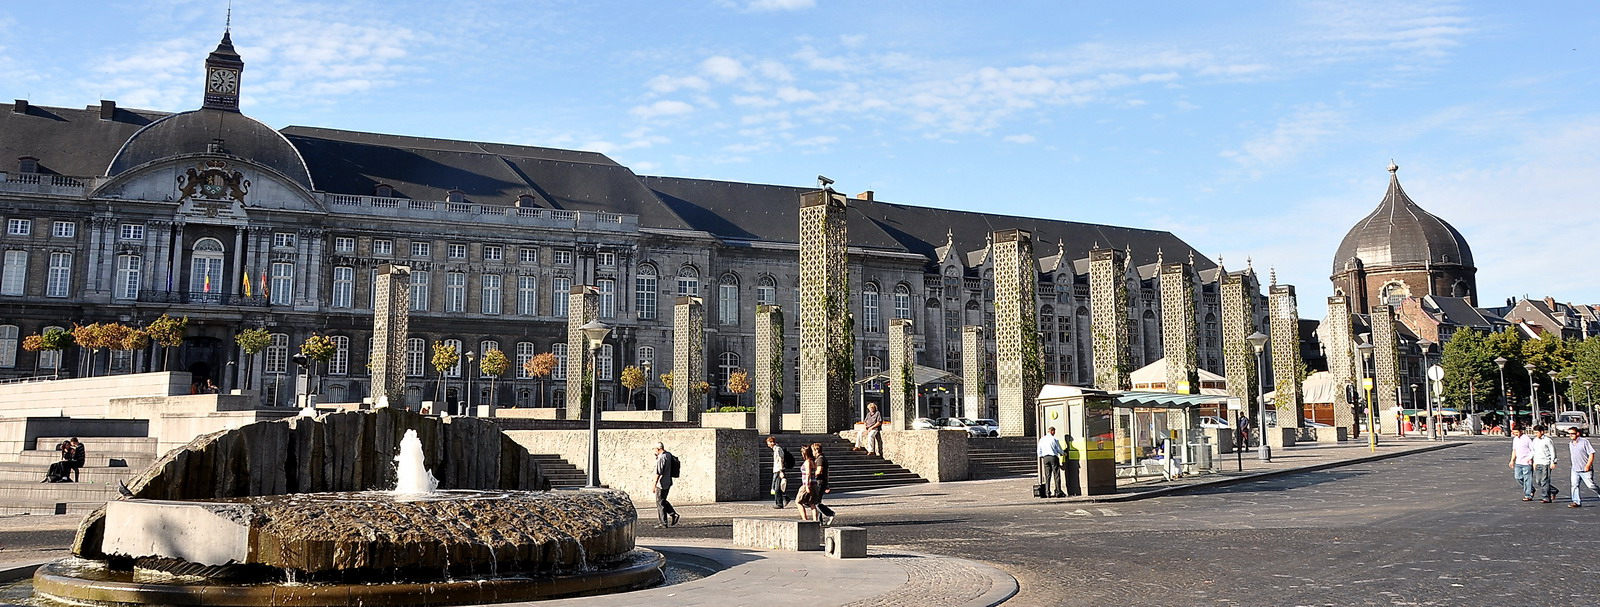 Le Palais et la place de l'ancienne cathédrale